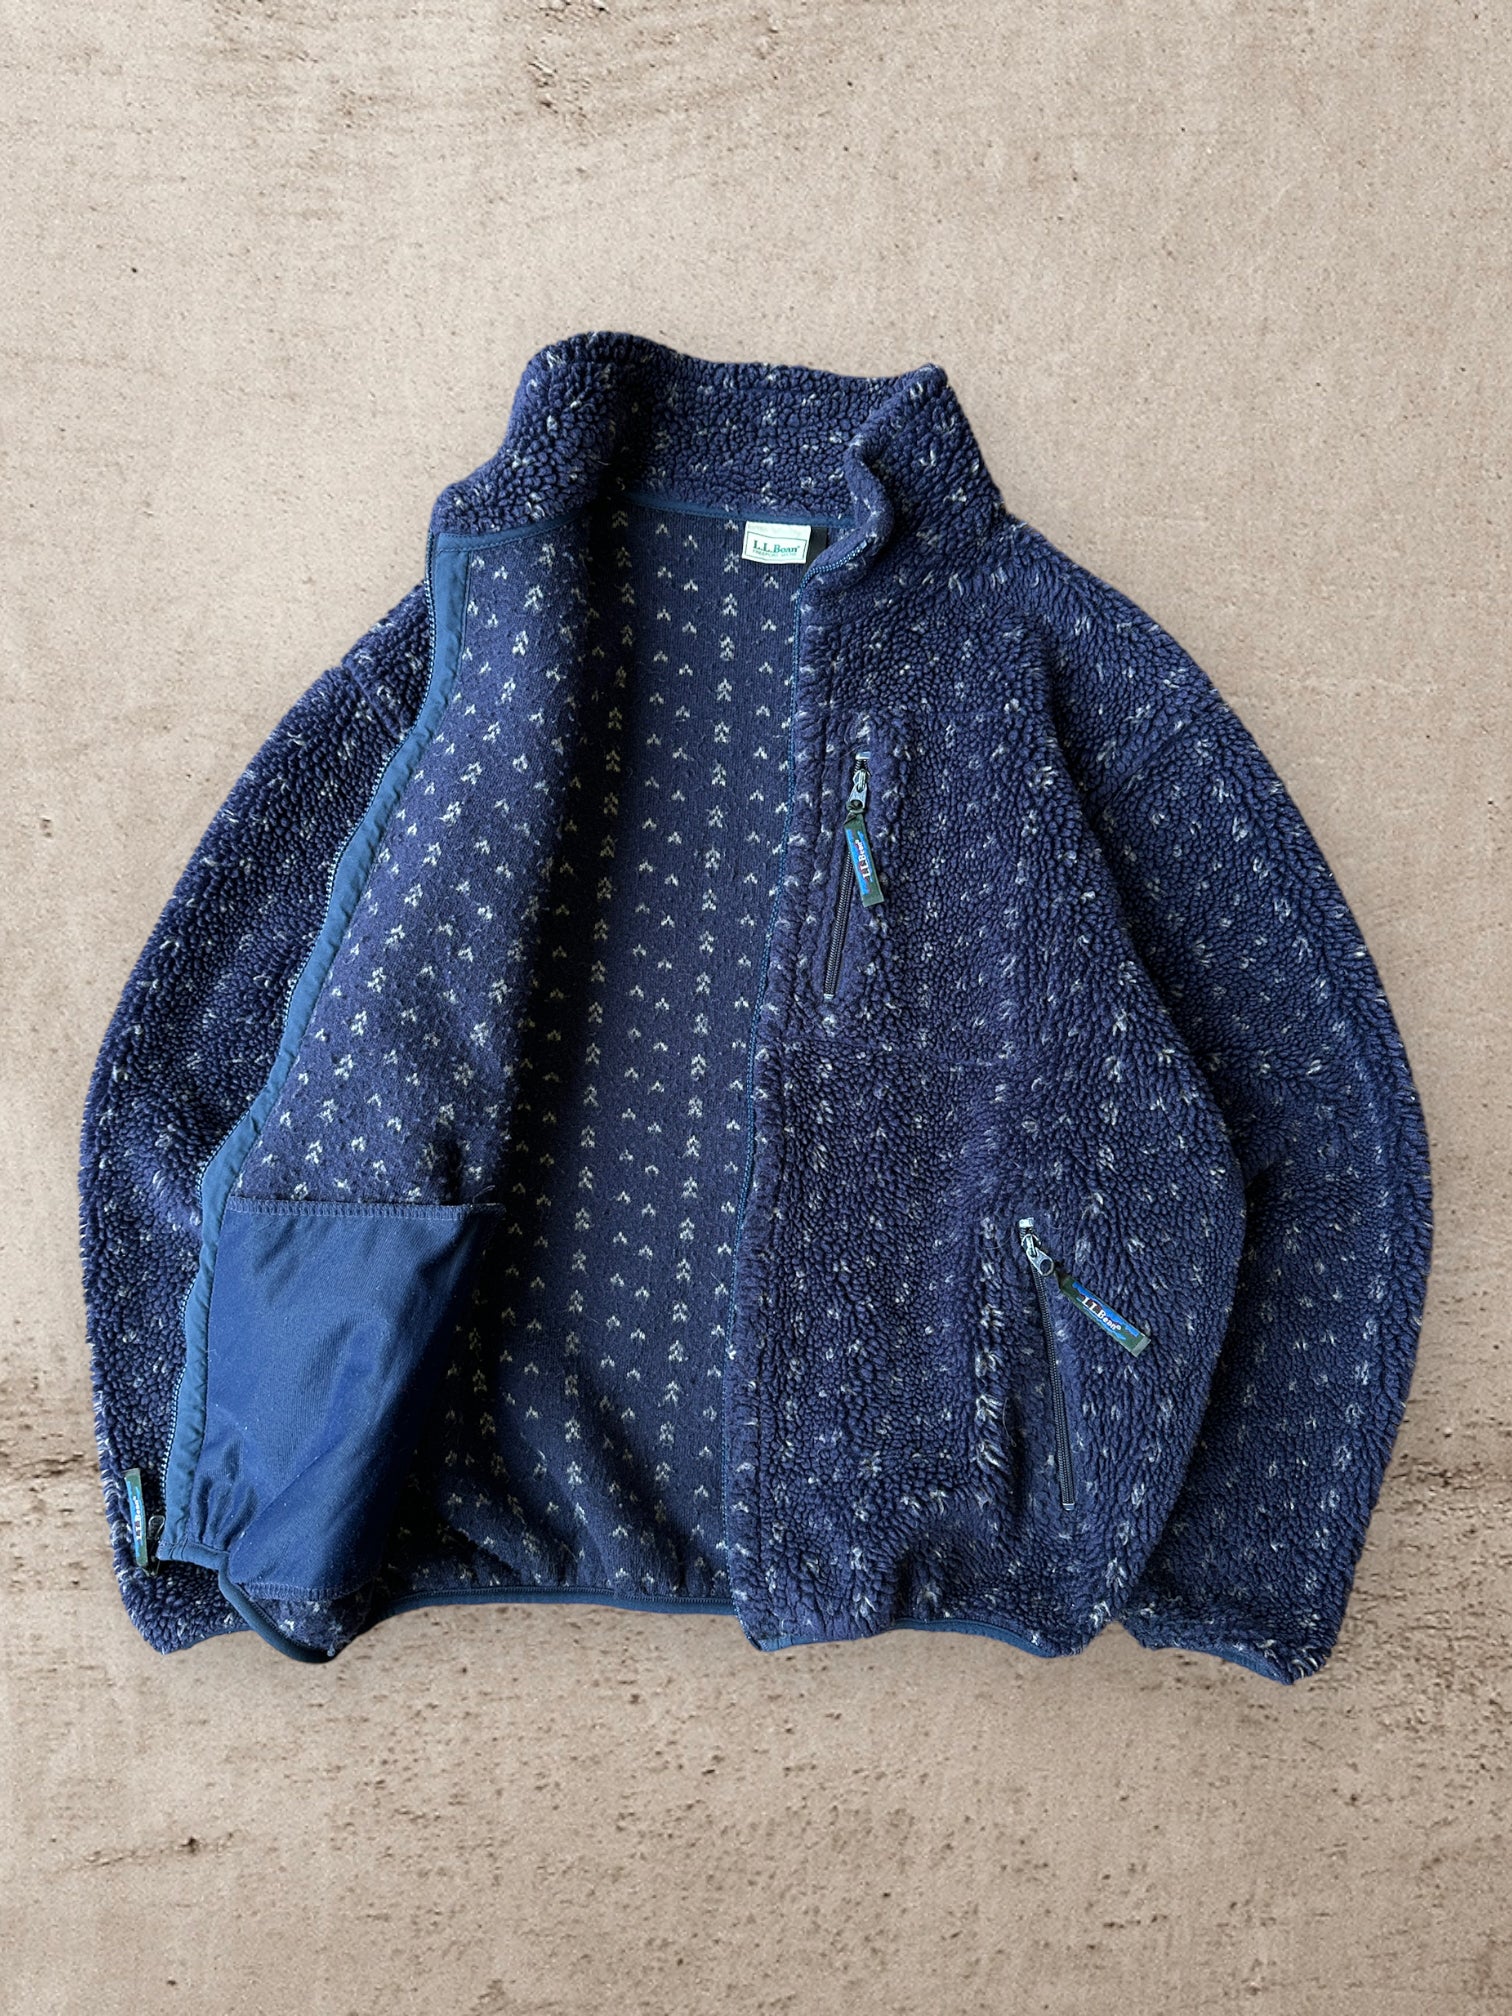 Vintage L.L Bean Fleece Jacket - XL